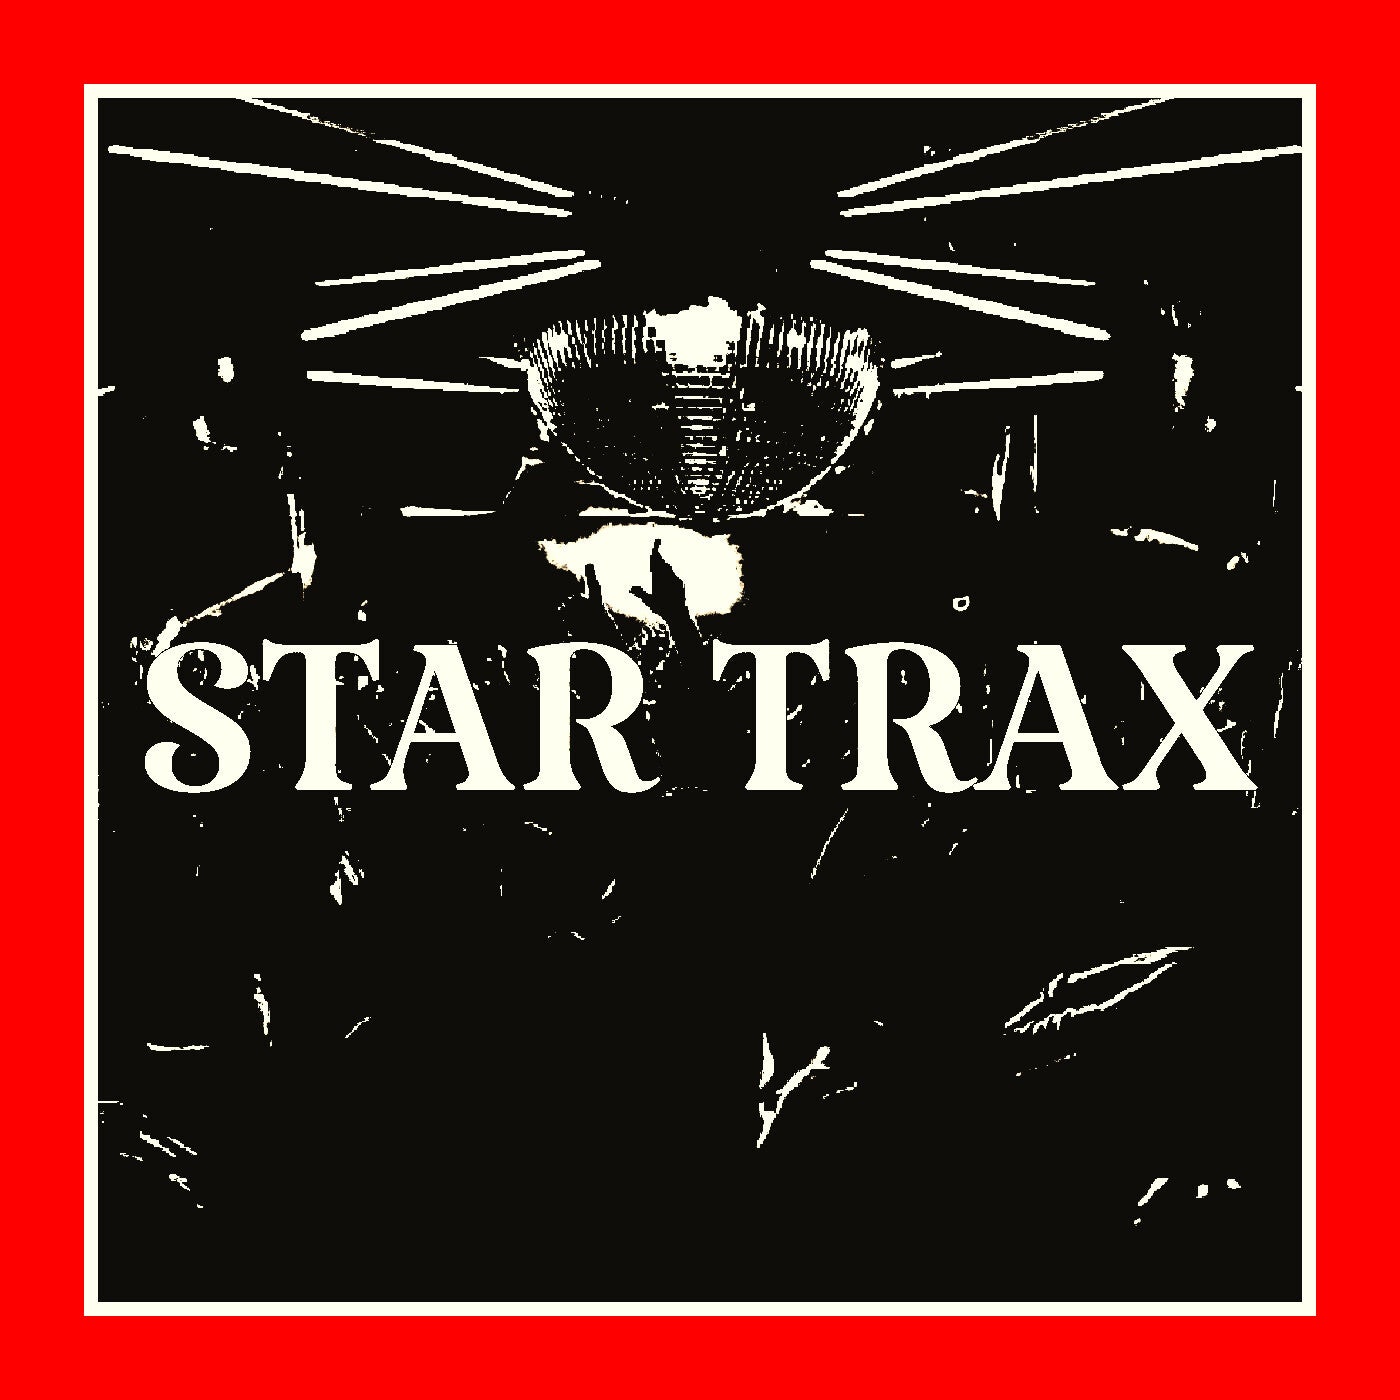 STAR TRAX VOL 81